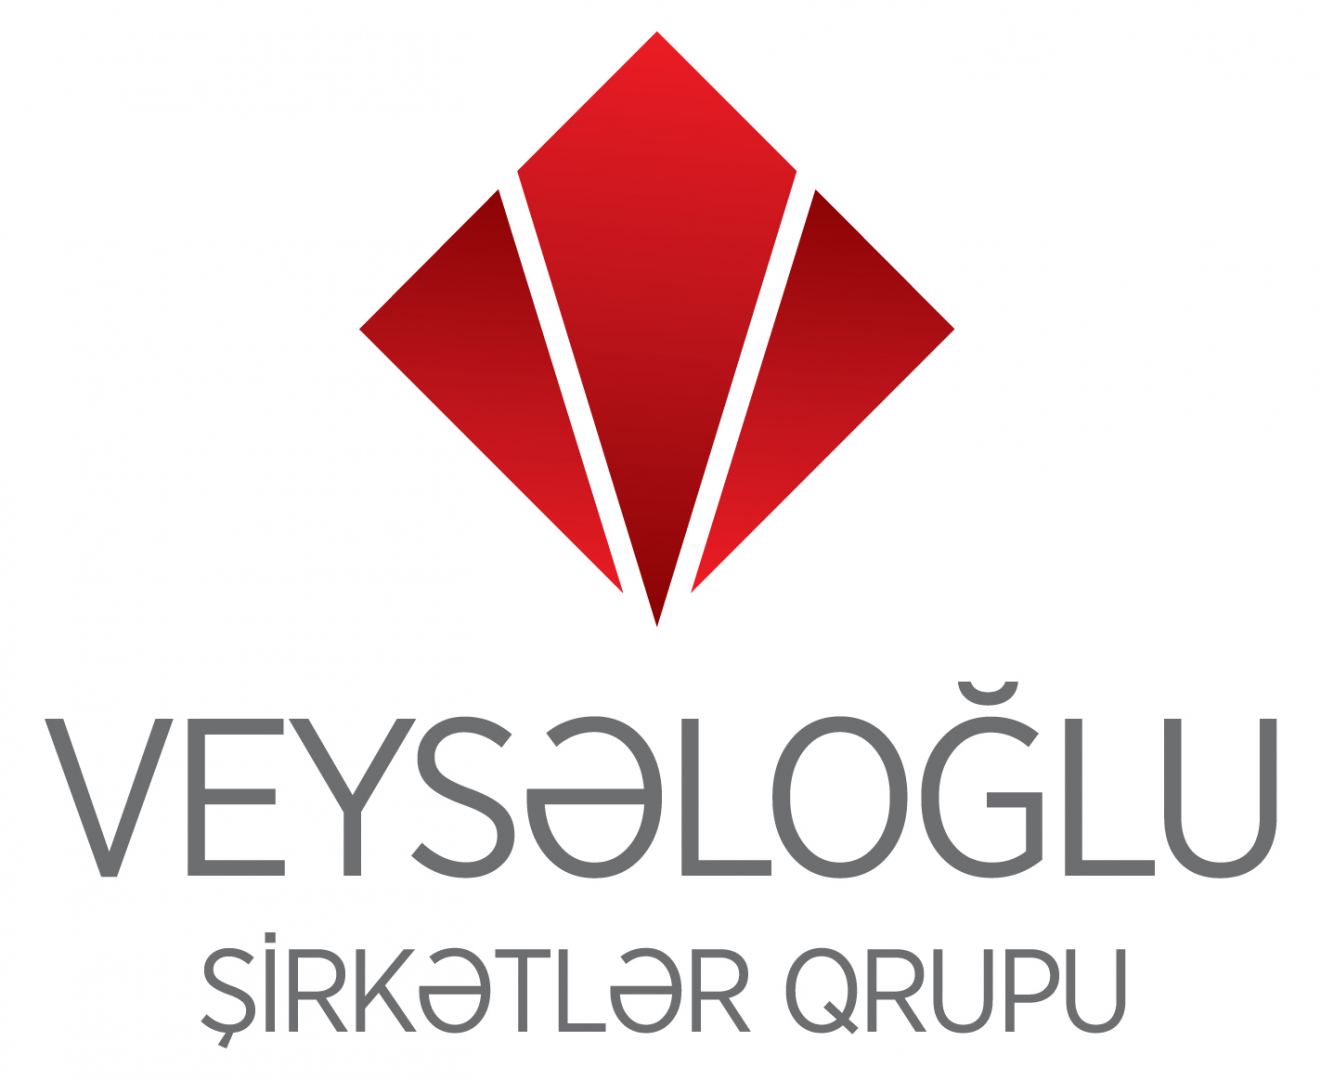 Veysəloğlu Şirkətlər Qrupuna aid müasir logistika mərkəzi 200 yeni iş elanı edib (FOTO)